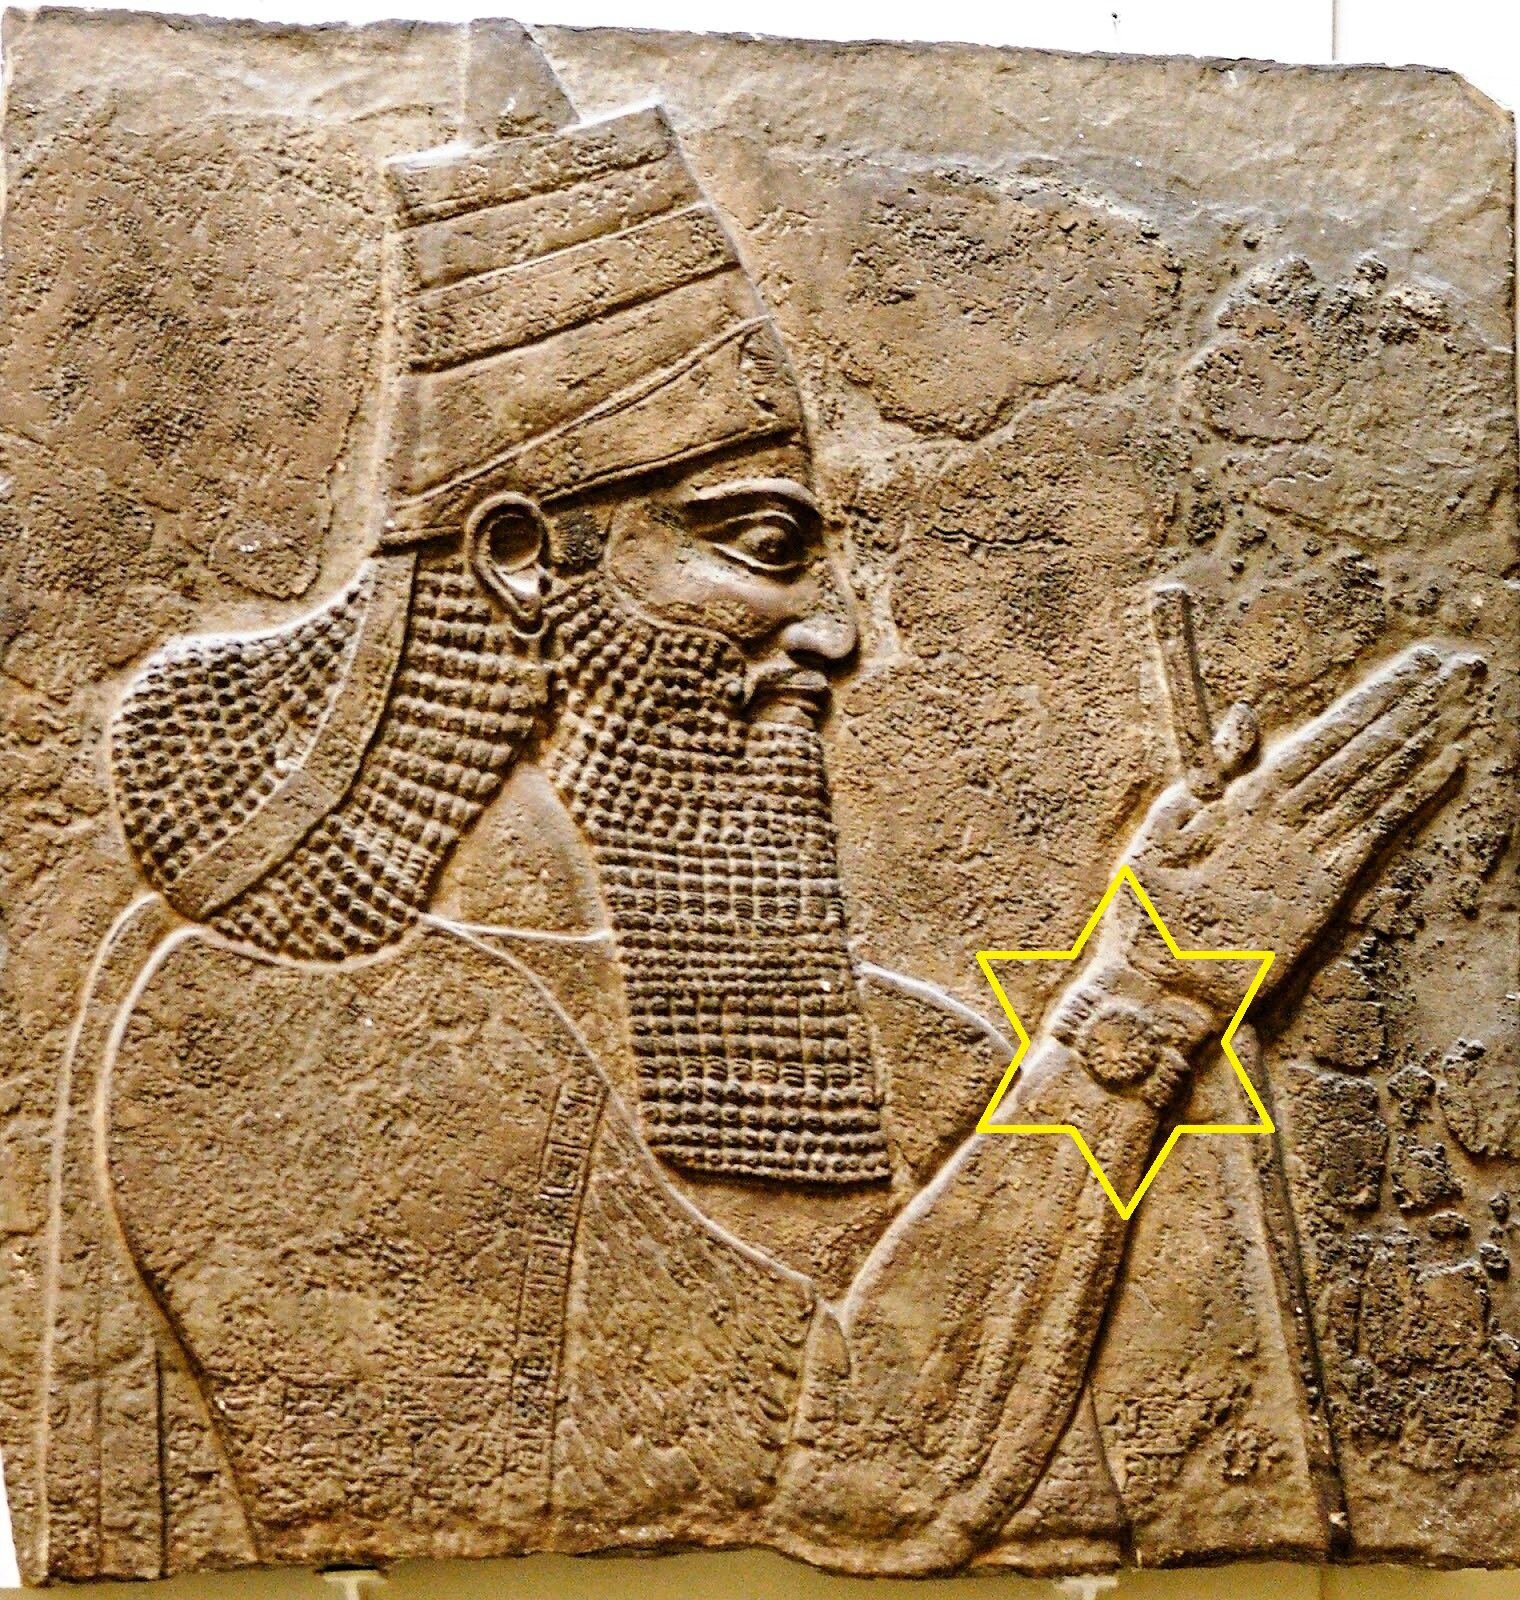 На фреске с изображением ассирийского царя нашли наручные часы из 20 века империи, всего, только, право, ученые, считают, историки, которых, наручные, фреске, изображен, Ассирийской, Ассирией, побеждать, существом, дворец, мифическим, рядом, правитель, джины